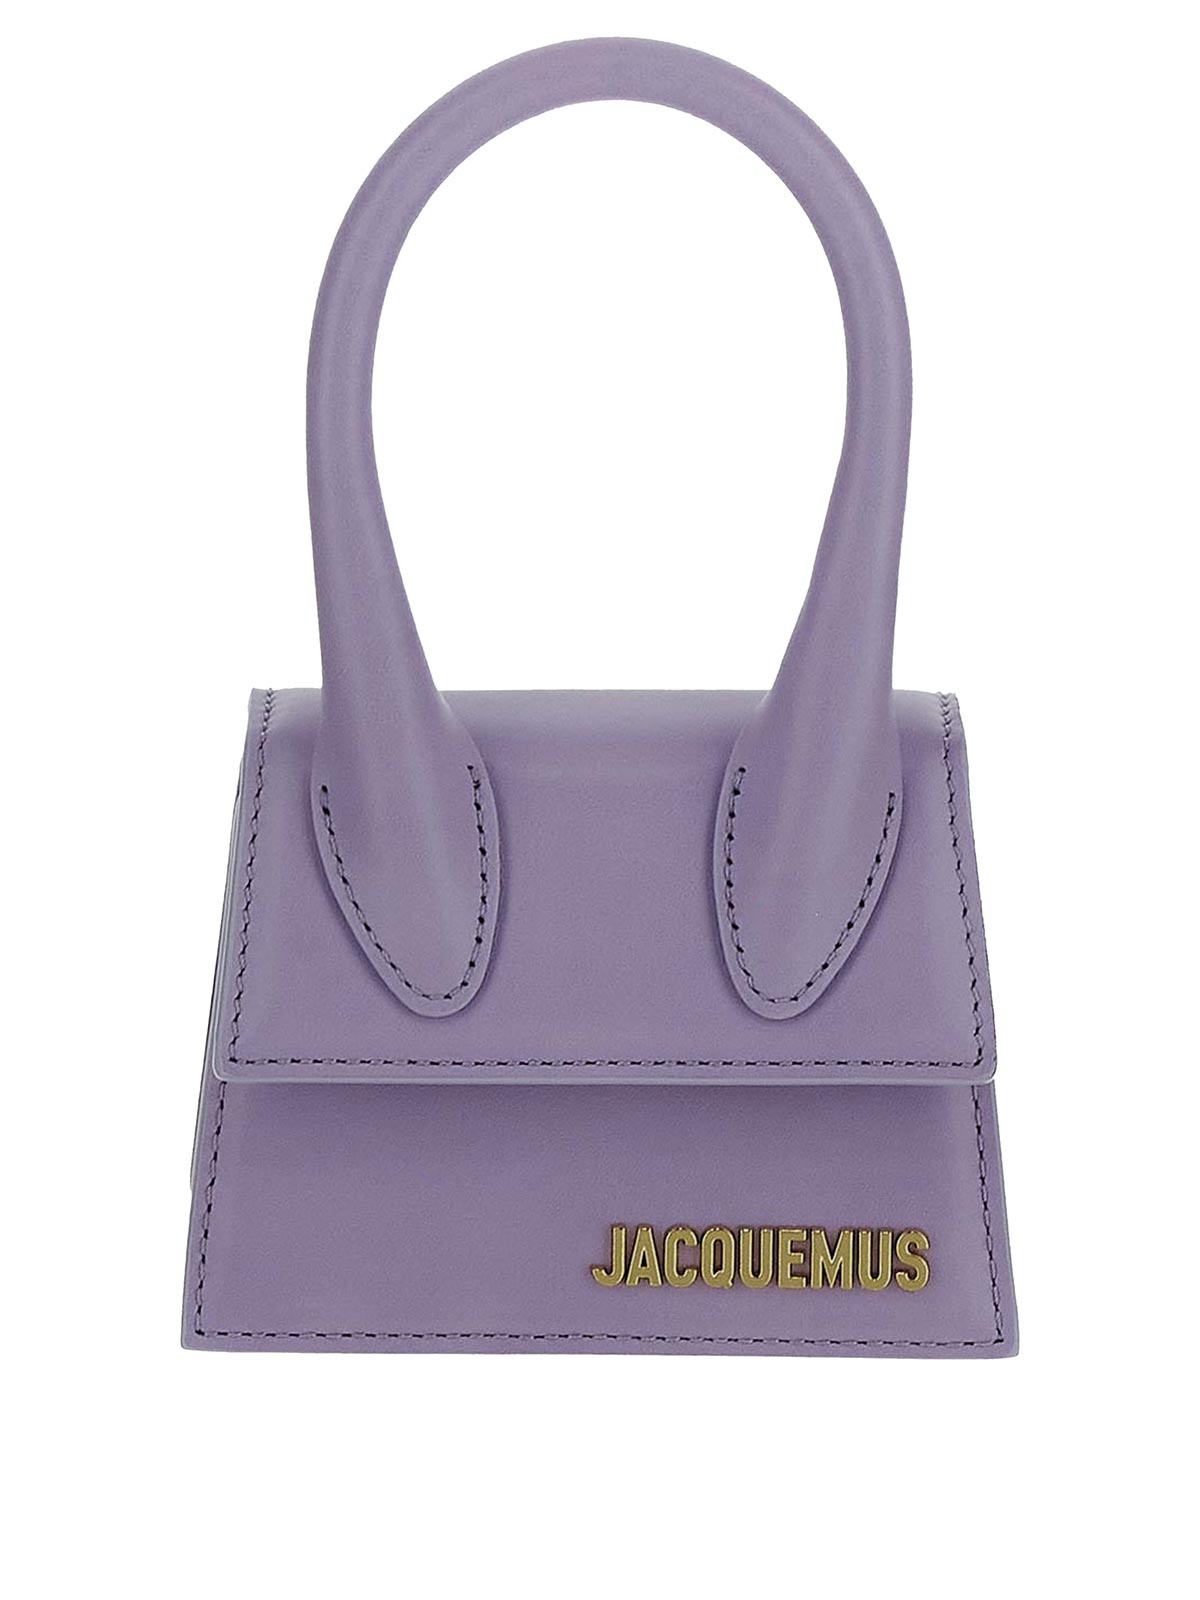 Jacquemus Mini Bag In Purple